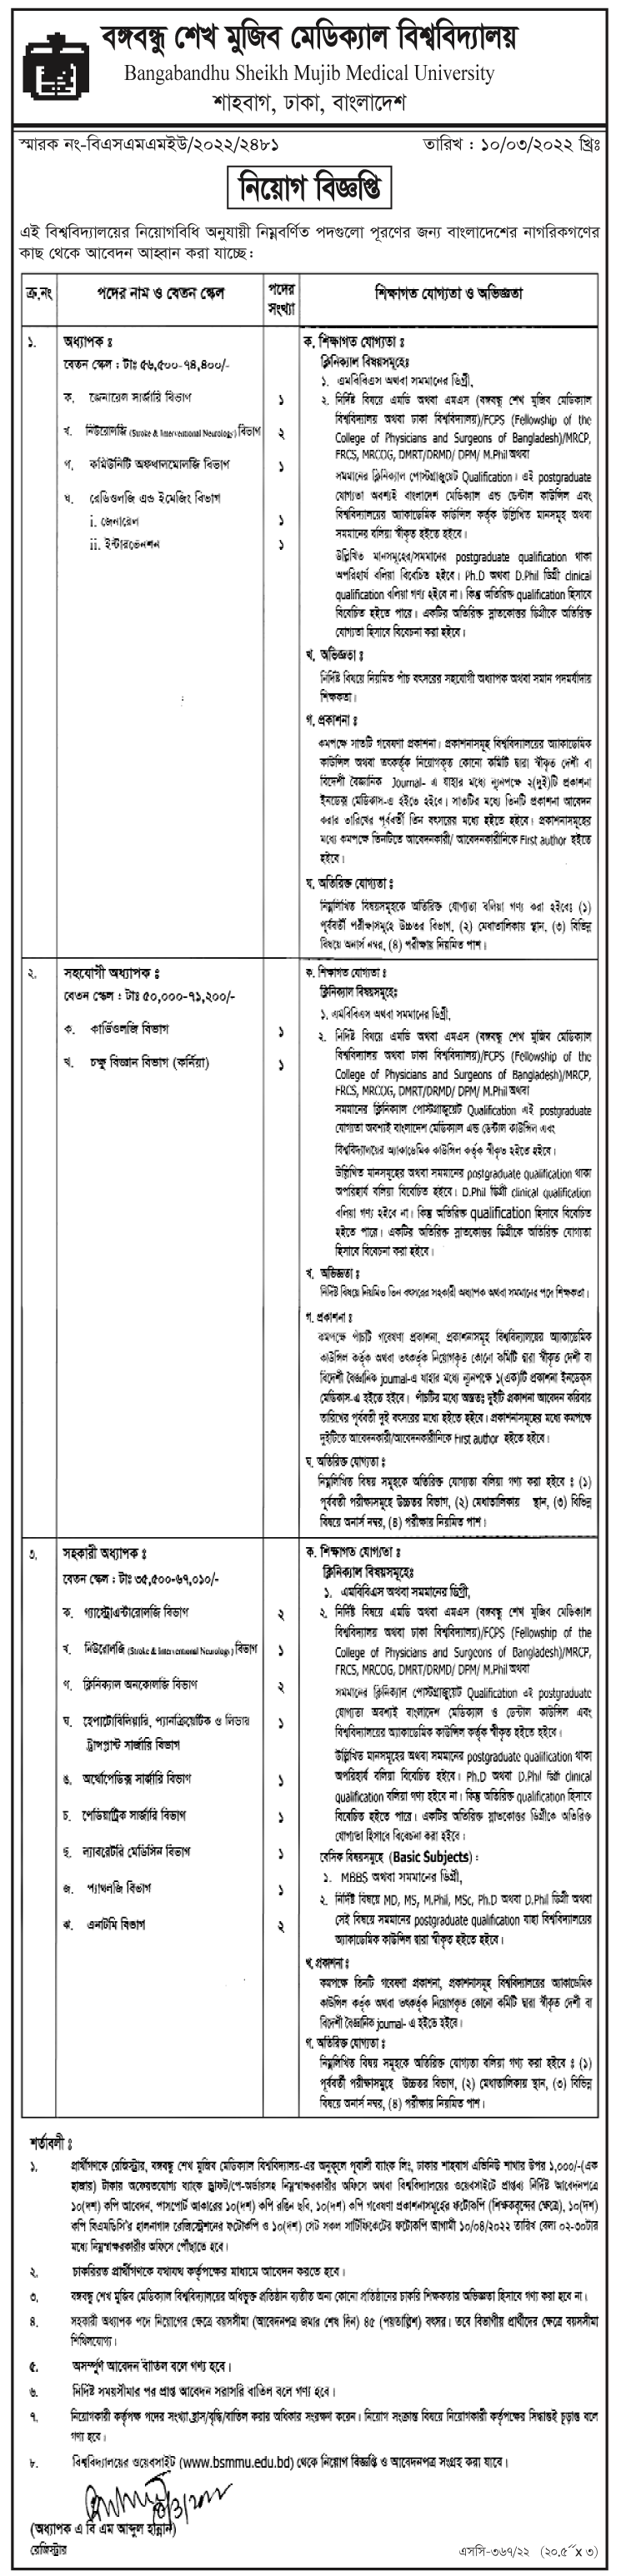 বঙ্গবন্ধু শেখ মুজিব মেডিকেল বিশ্ববিদ্যালয় নিয়োগ বিজ্ঞপ্তি ২০২২ | Bangabandhu Sheikh Mujib Medical University Job Circular 2022